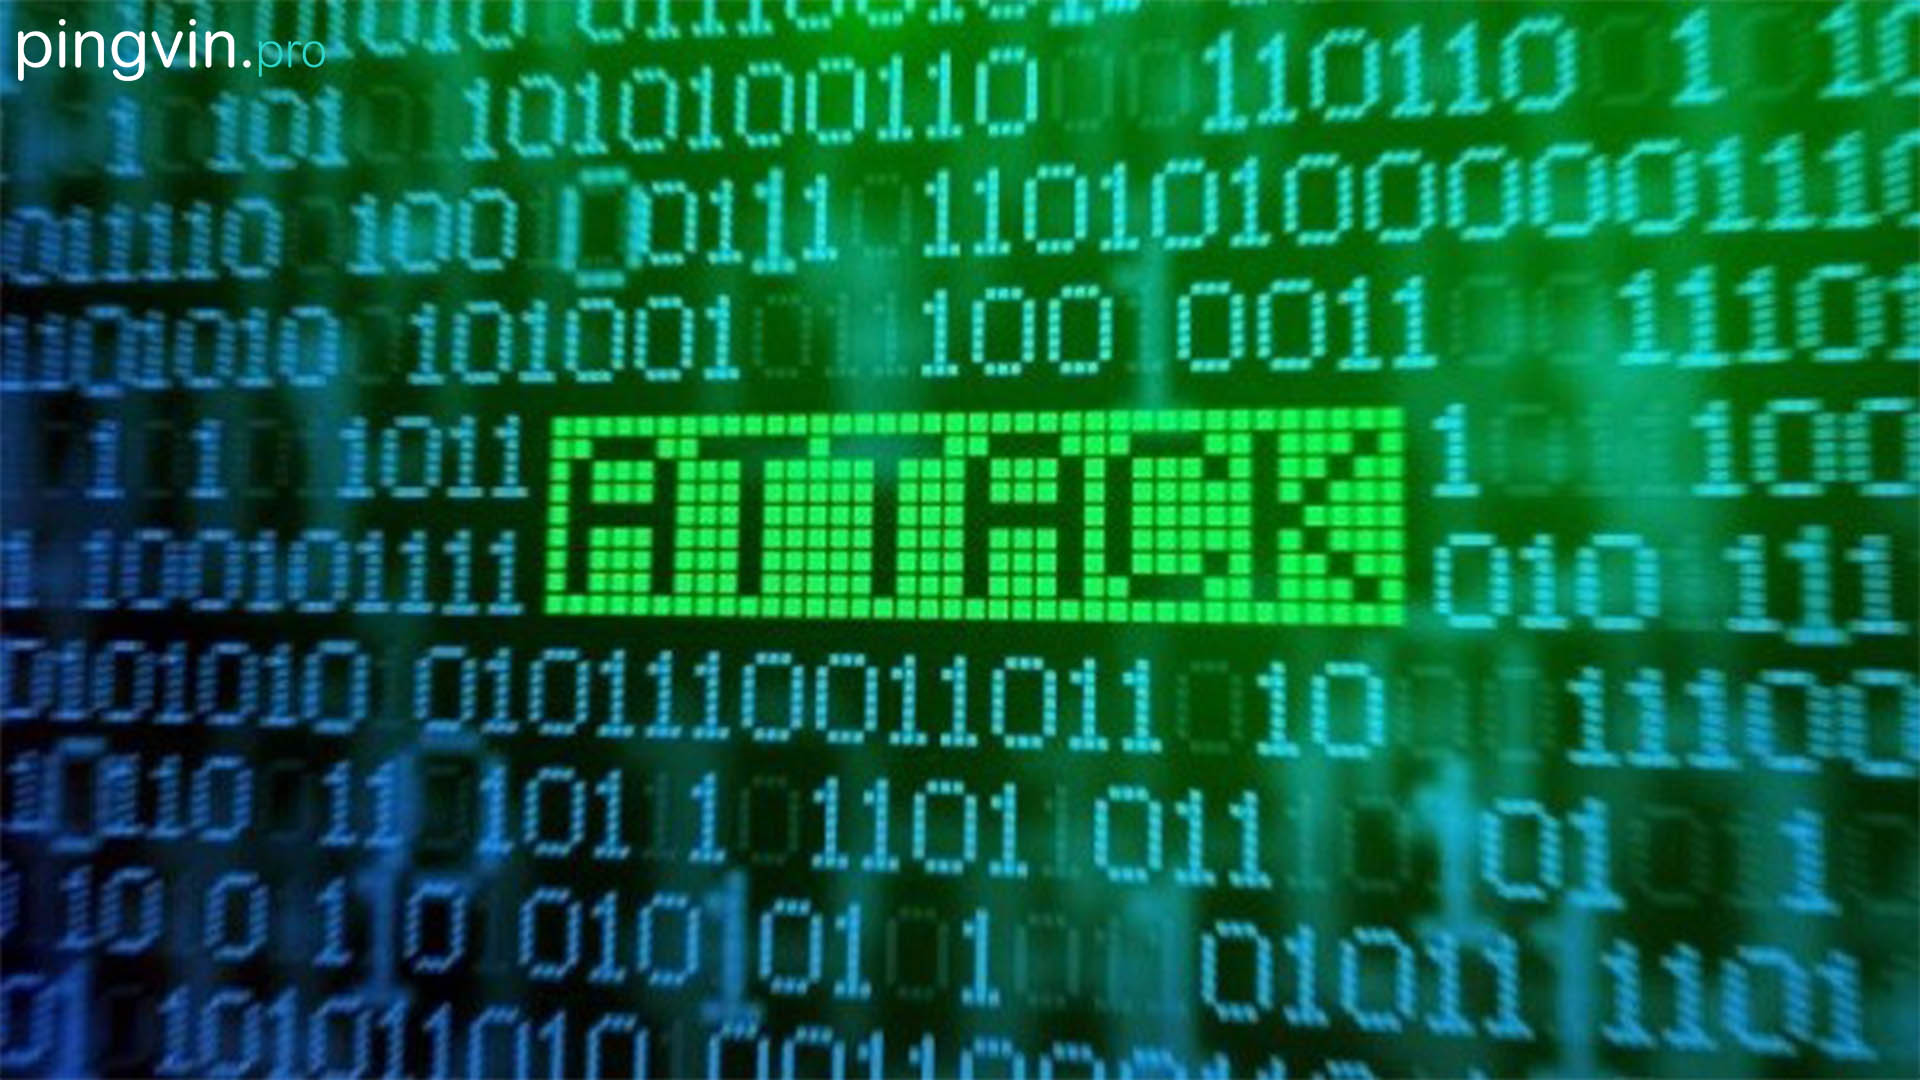 Фішинг DDoS-атаку ПриватБанк та Ощадбанк кібератак / фішингова схема / фішингових / Державні інформаційні ресурси потерпають від DDoS-атак, фішингу і шкідливого ПЗ